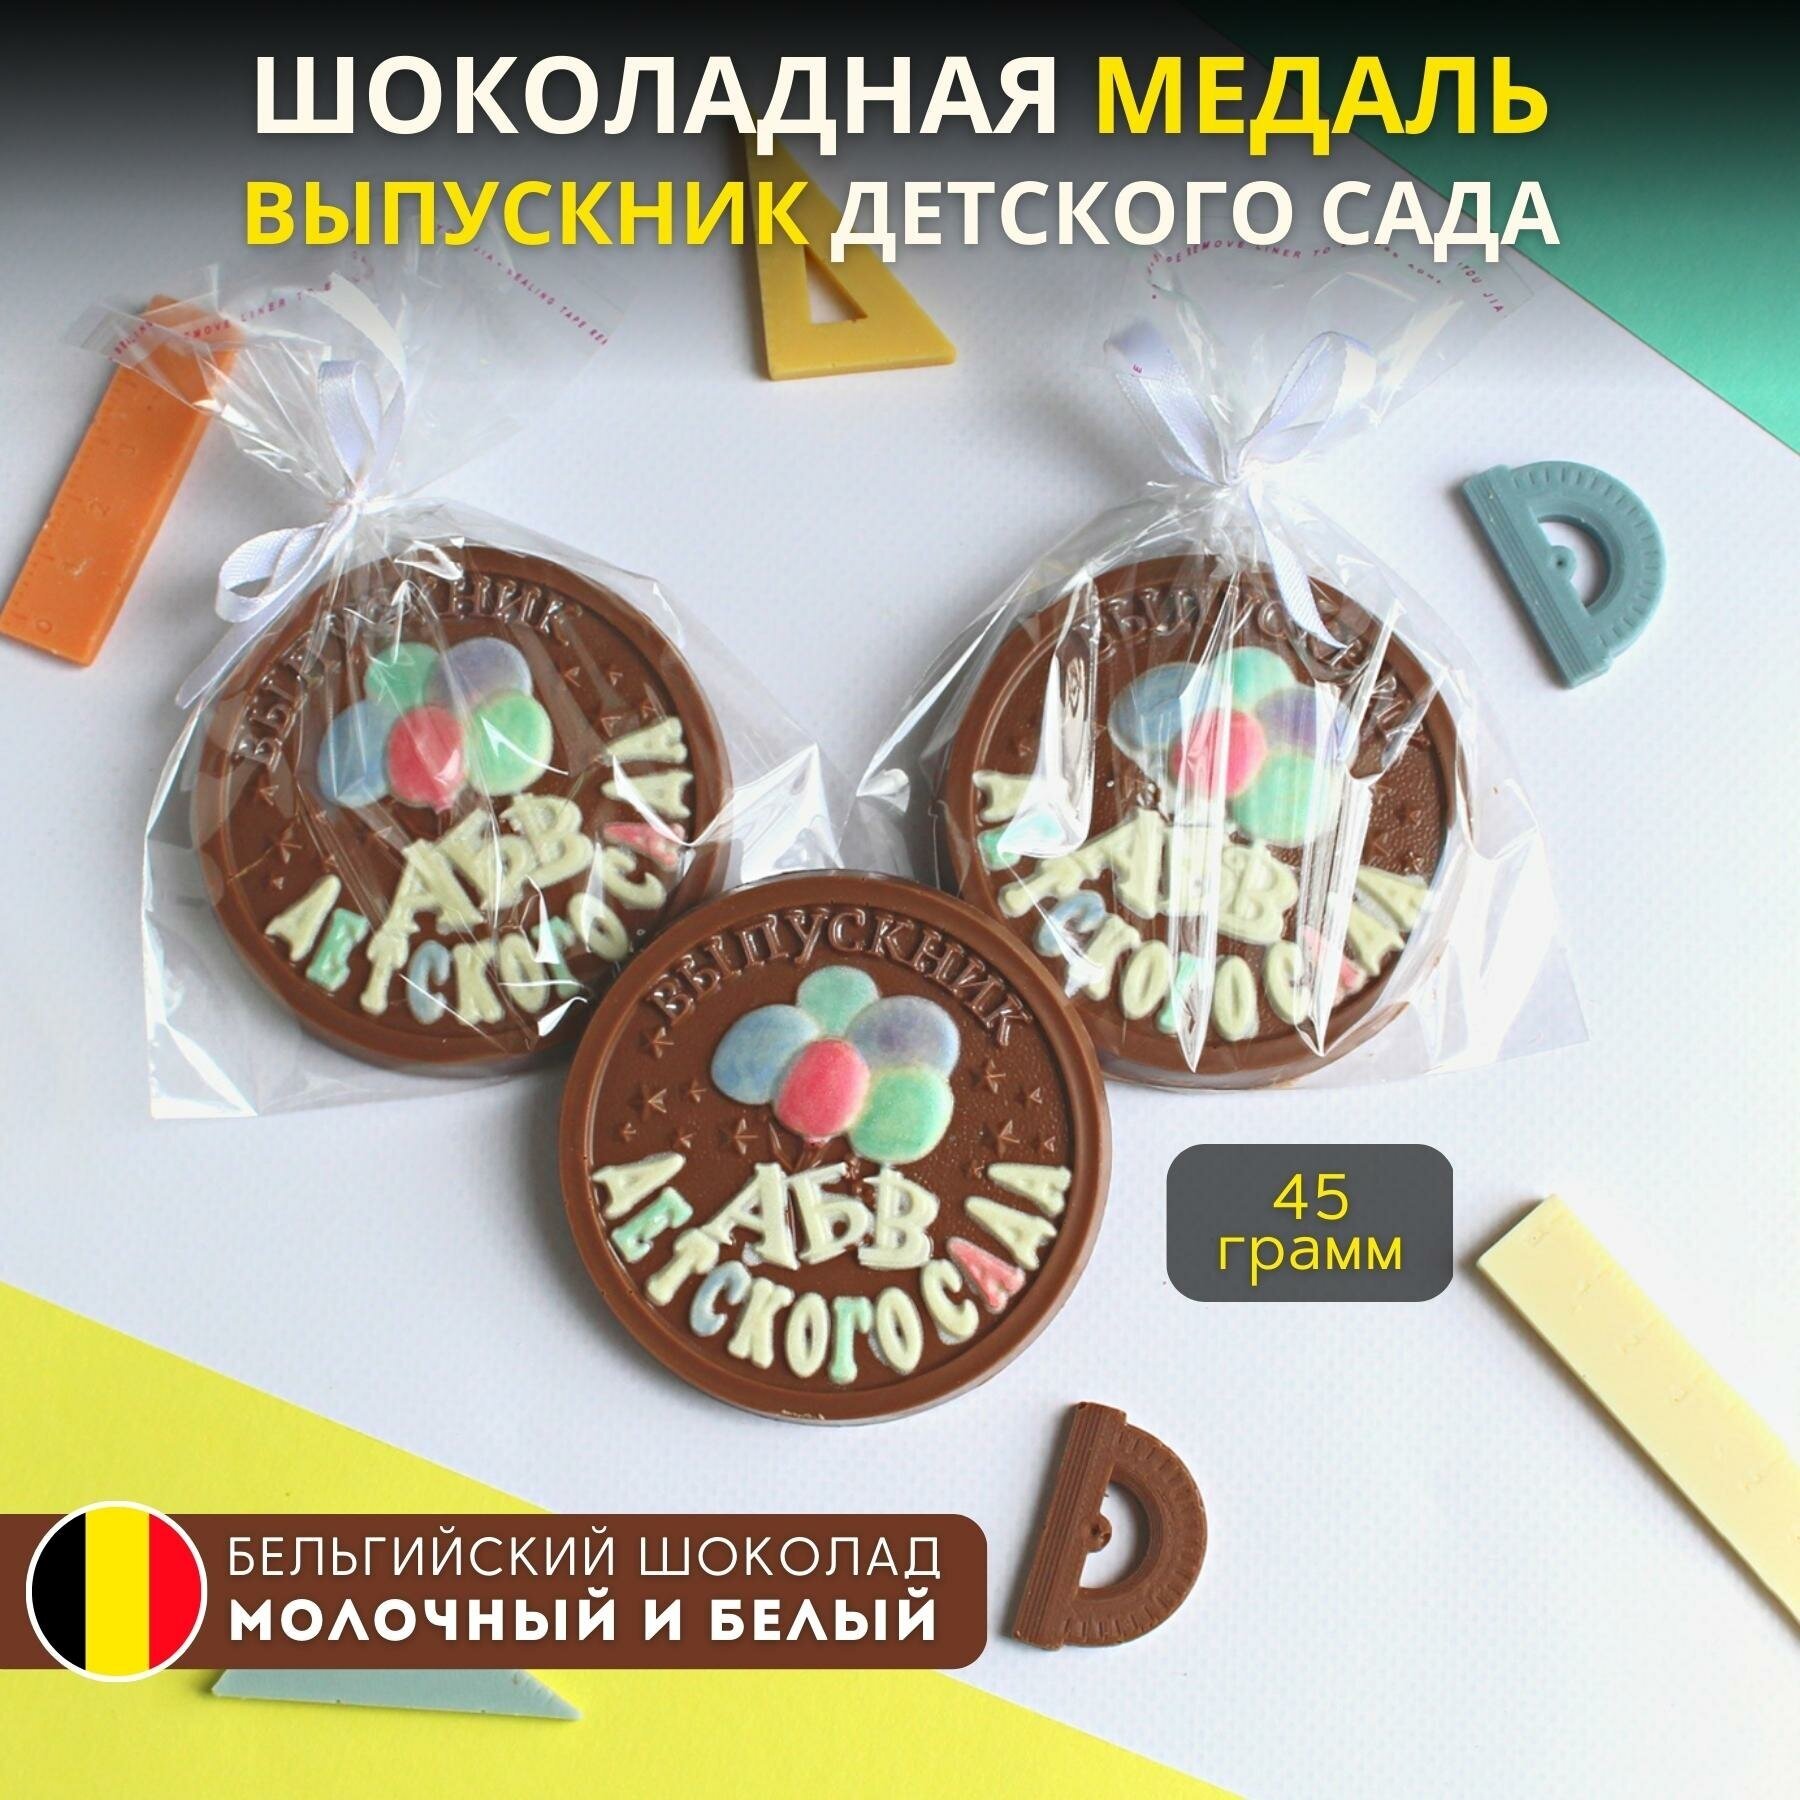 Шоколадная медаль "выпускник детского сада", 1 шт, Praline лавка сладостей, 45 гр